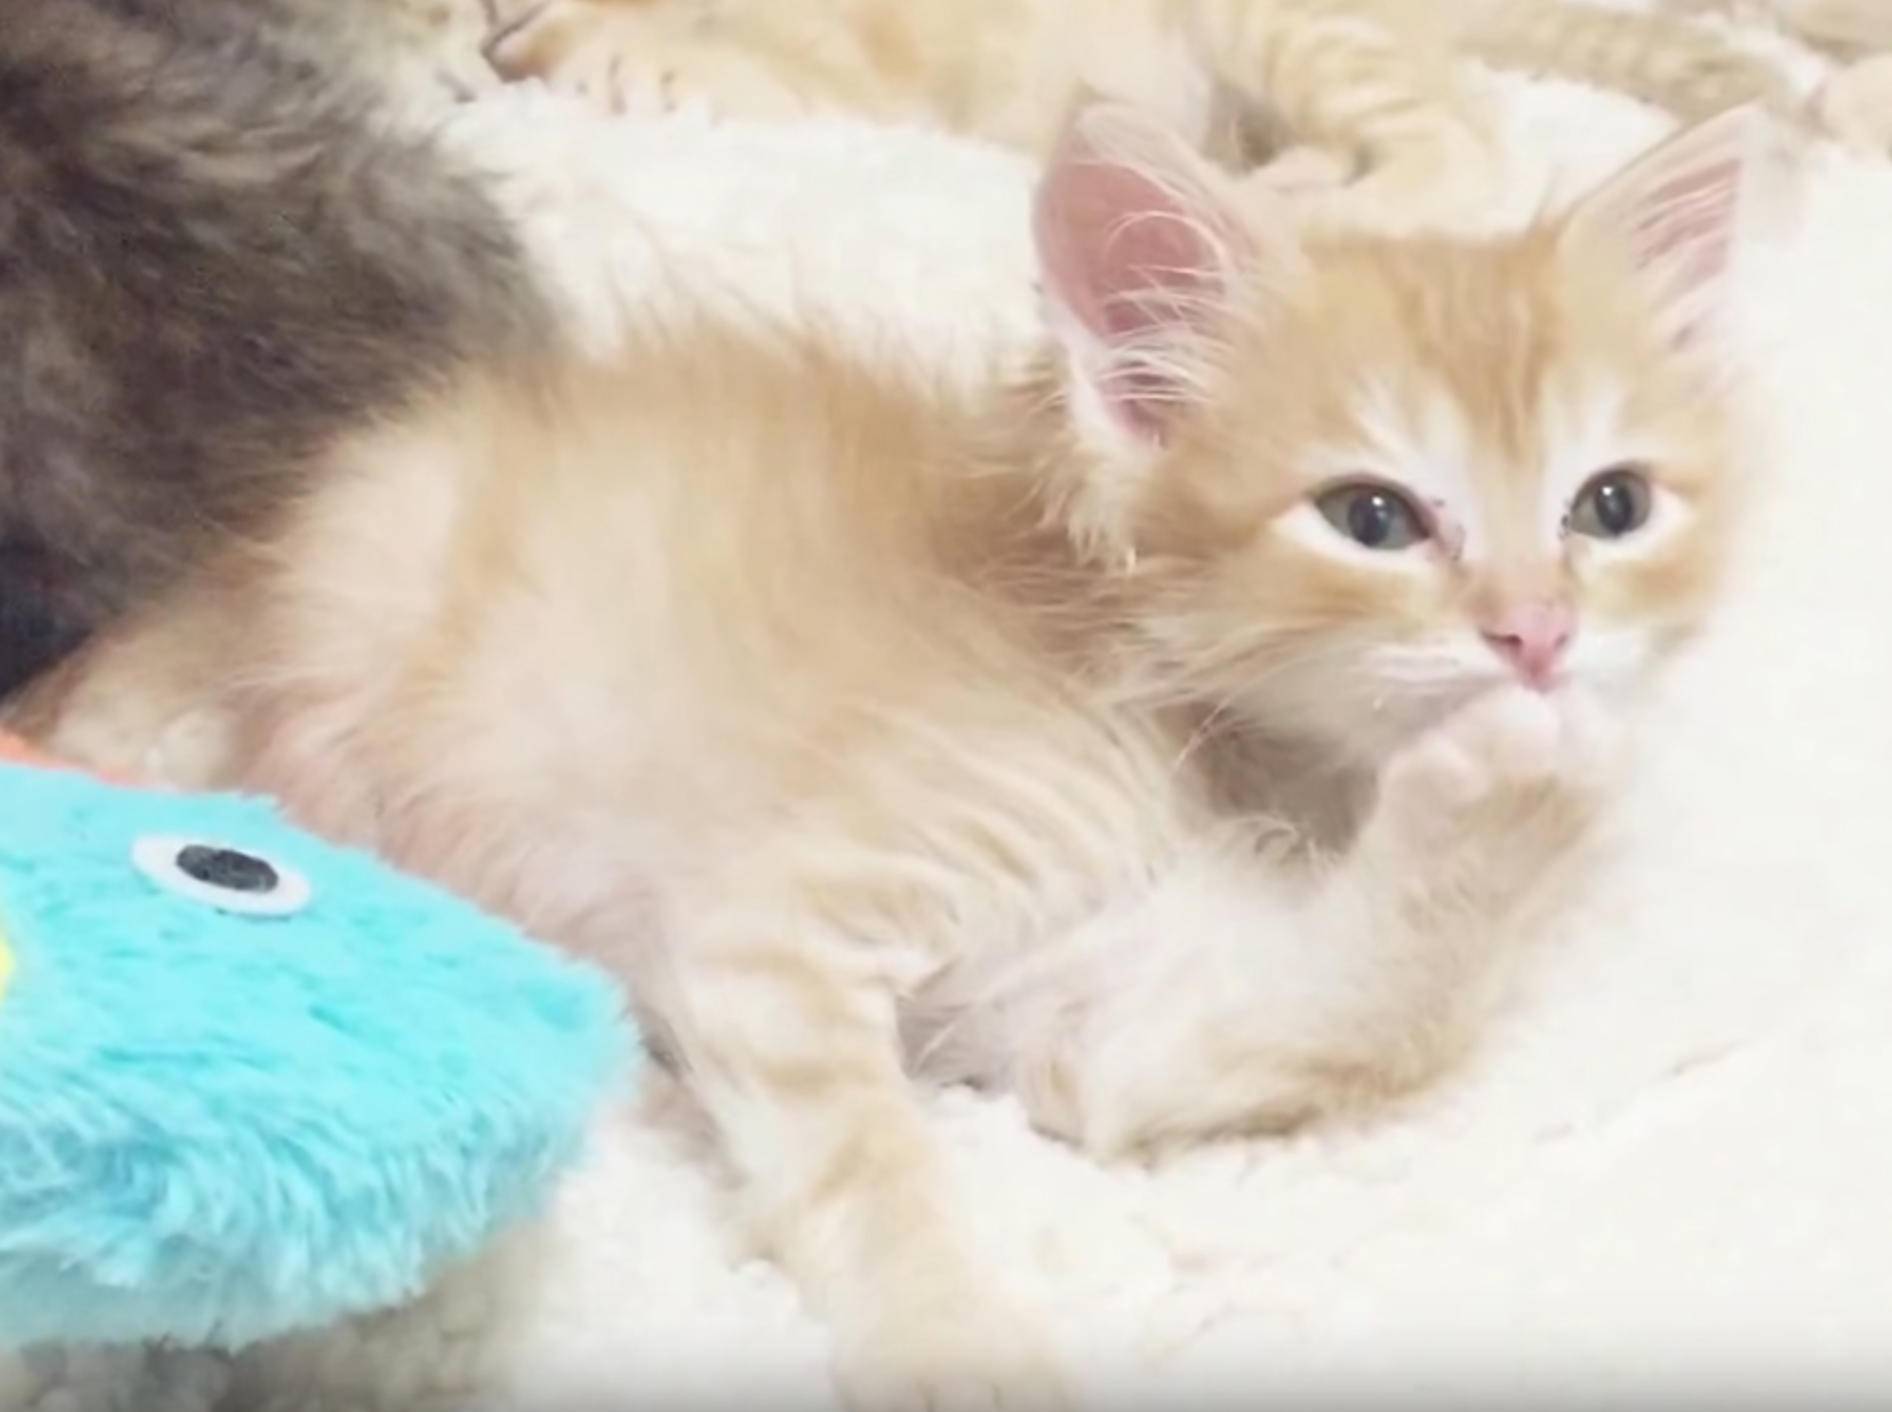 Rotes Tigerkätzchen Boris putzt sich und schnurrt – YouTube / foster kittens